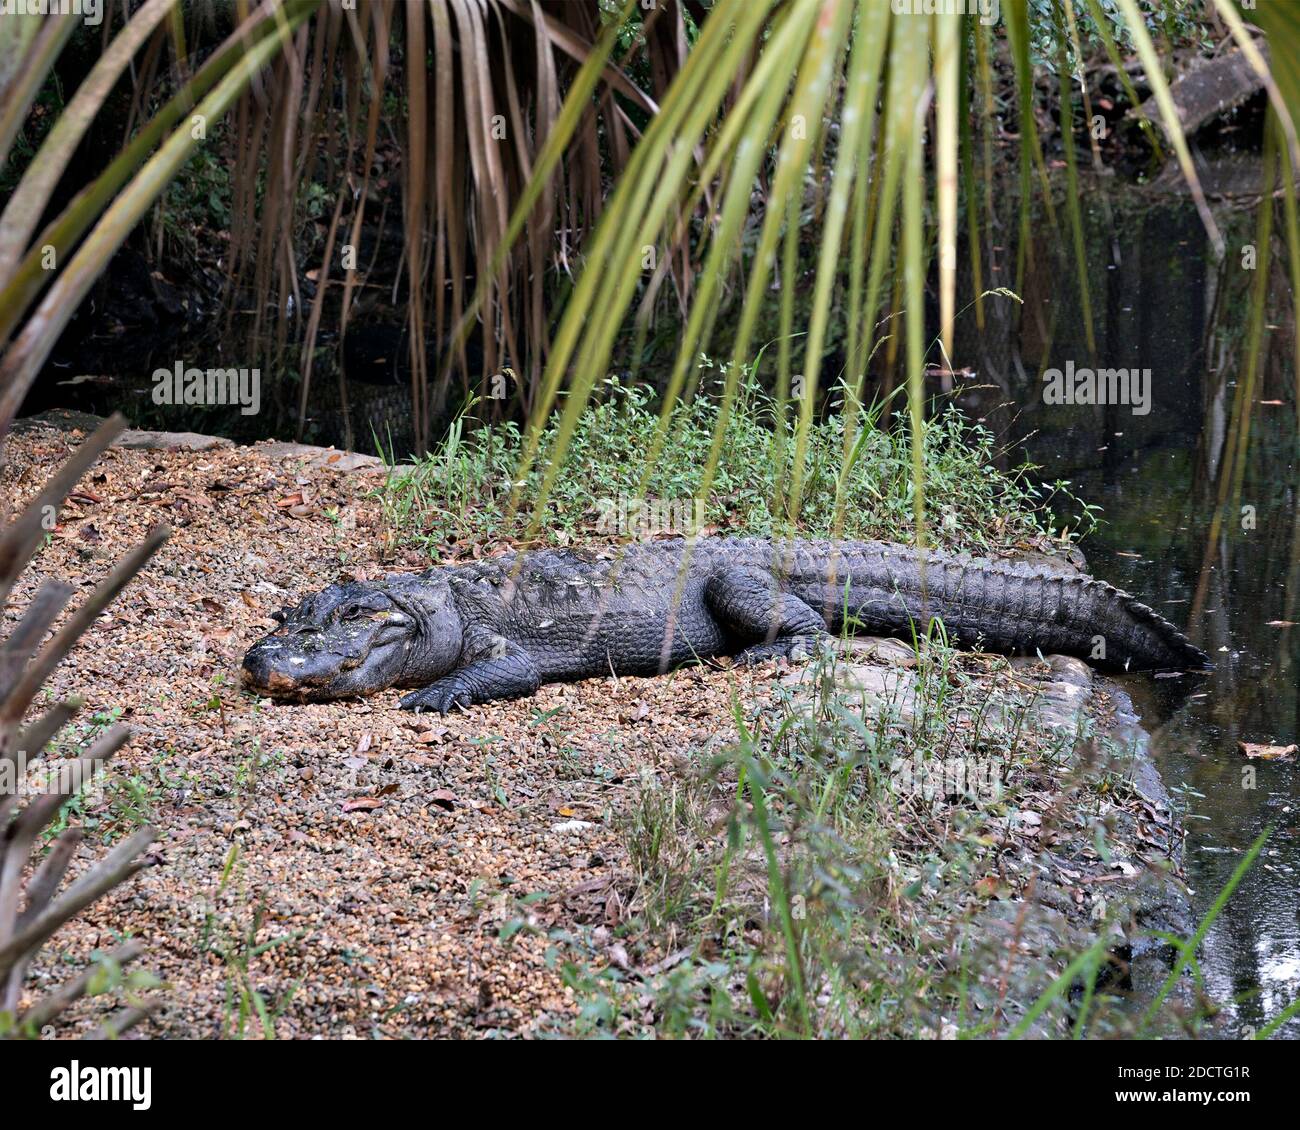 Vista ravvicinata del profilo dell'alligatore, riposante accanto all'acqua, che mostra corpo, testa, coda, piedi e che si gode del suo habitat e dell'ambiente. Foto alligatore. Foto Stock